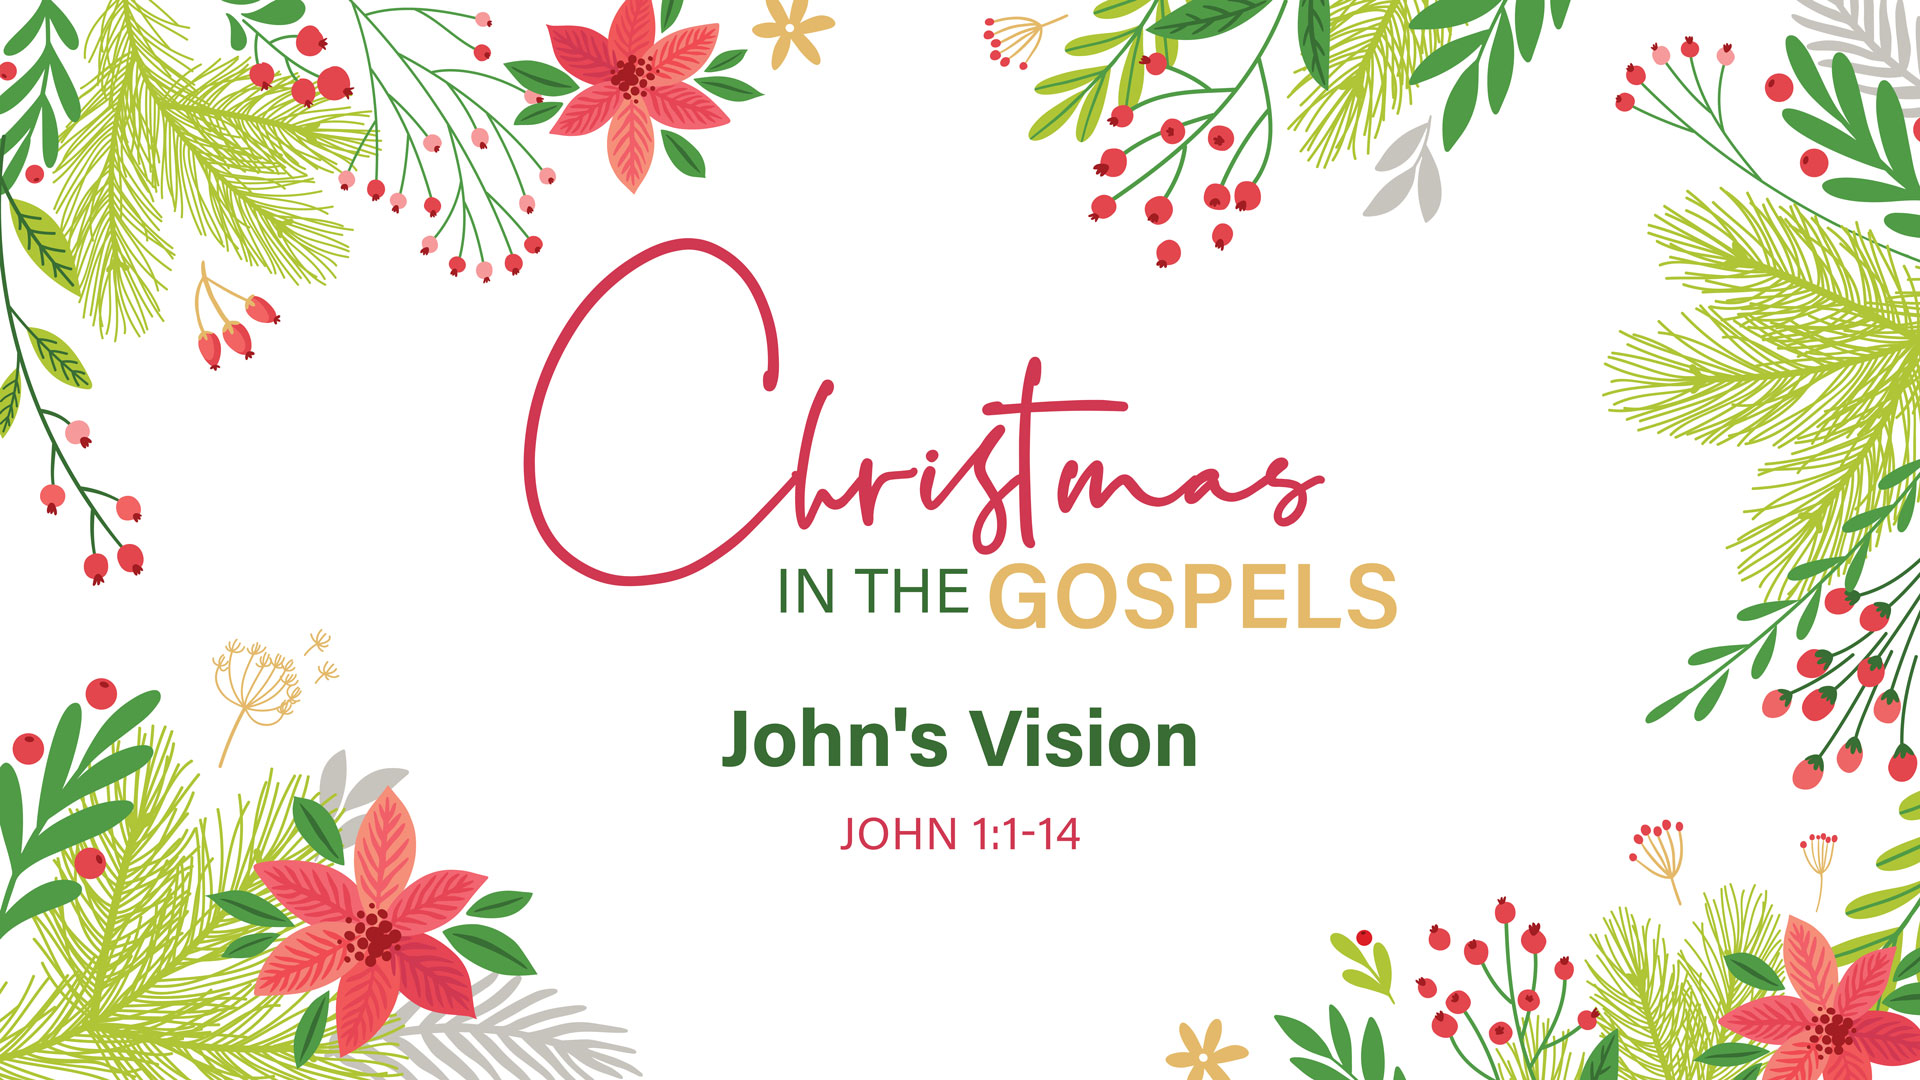 Christmas in the Gospels: John's Vision